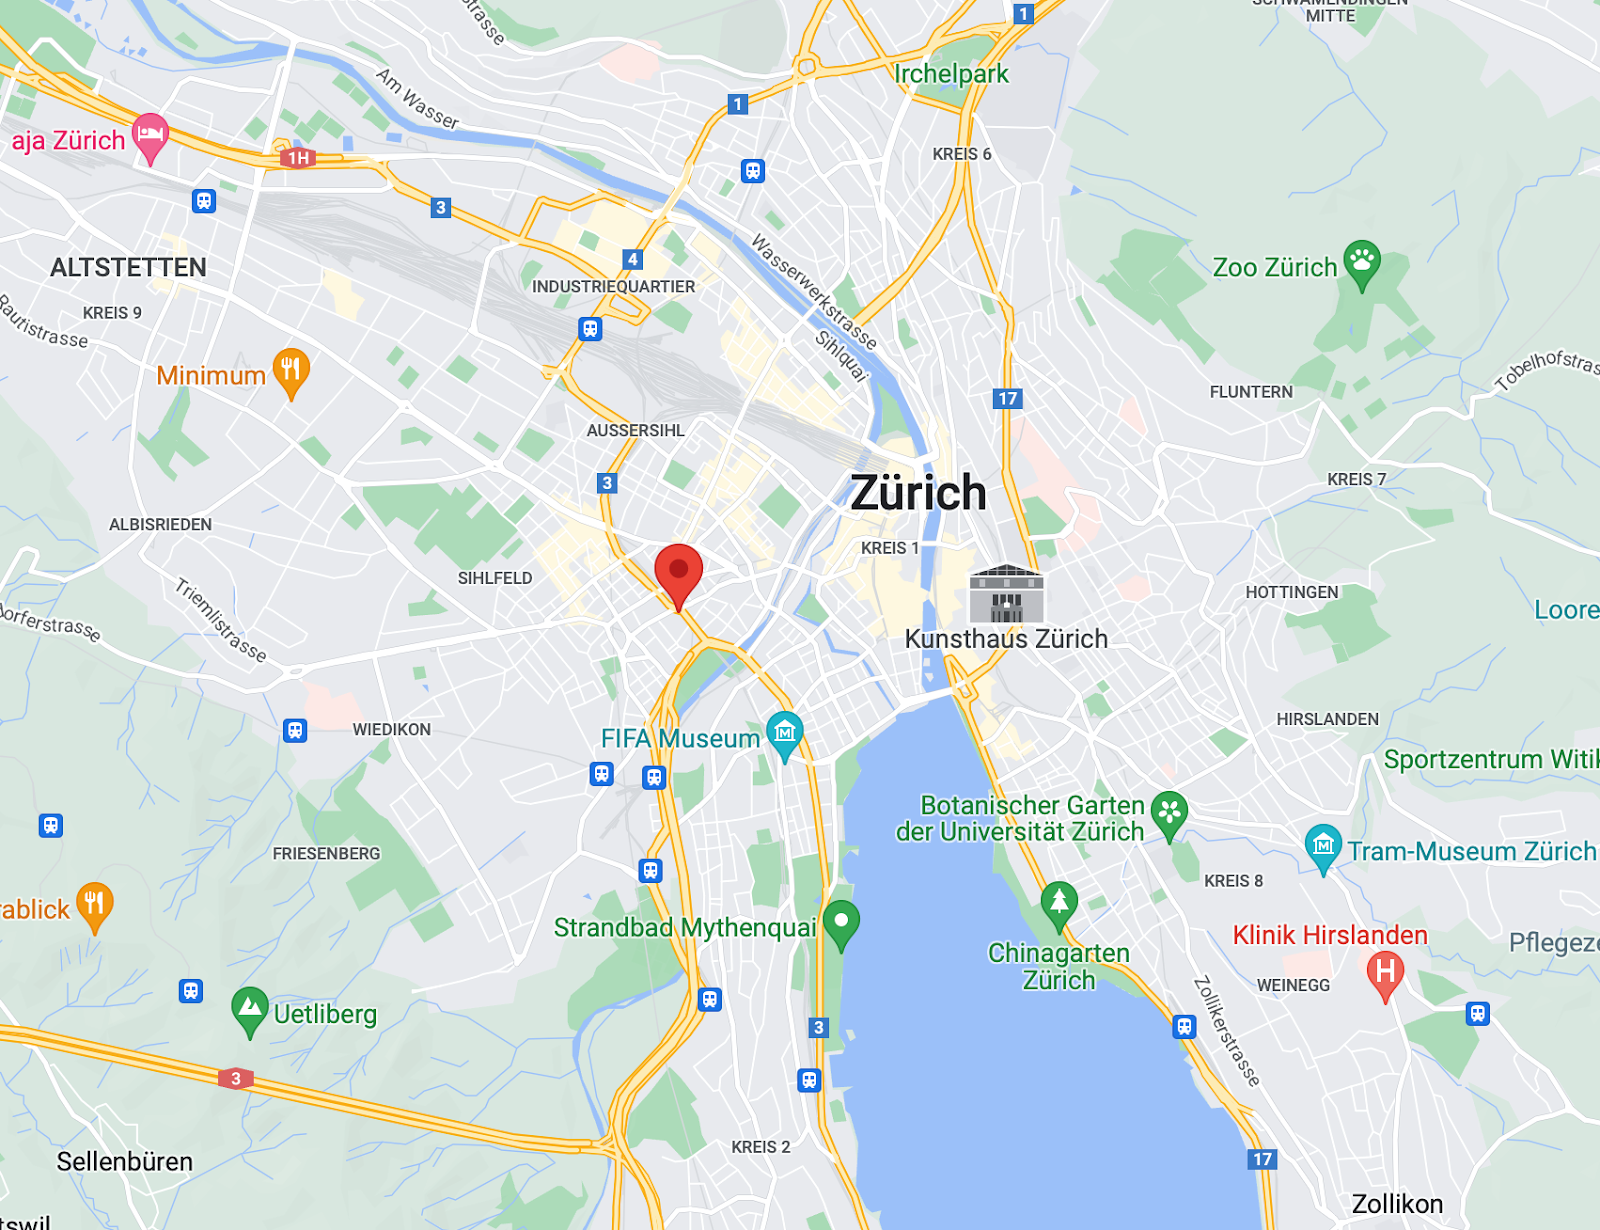 Sensor location in Zurich